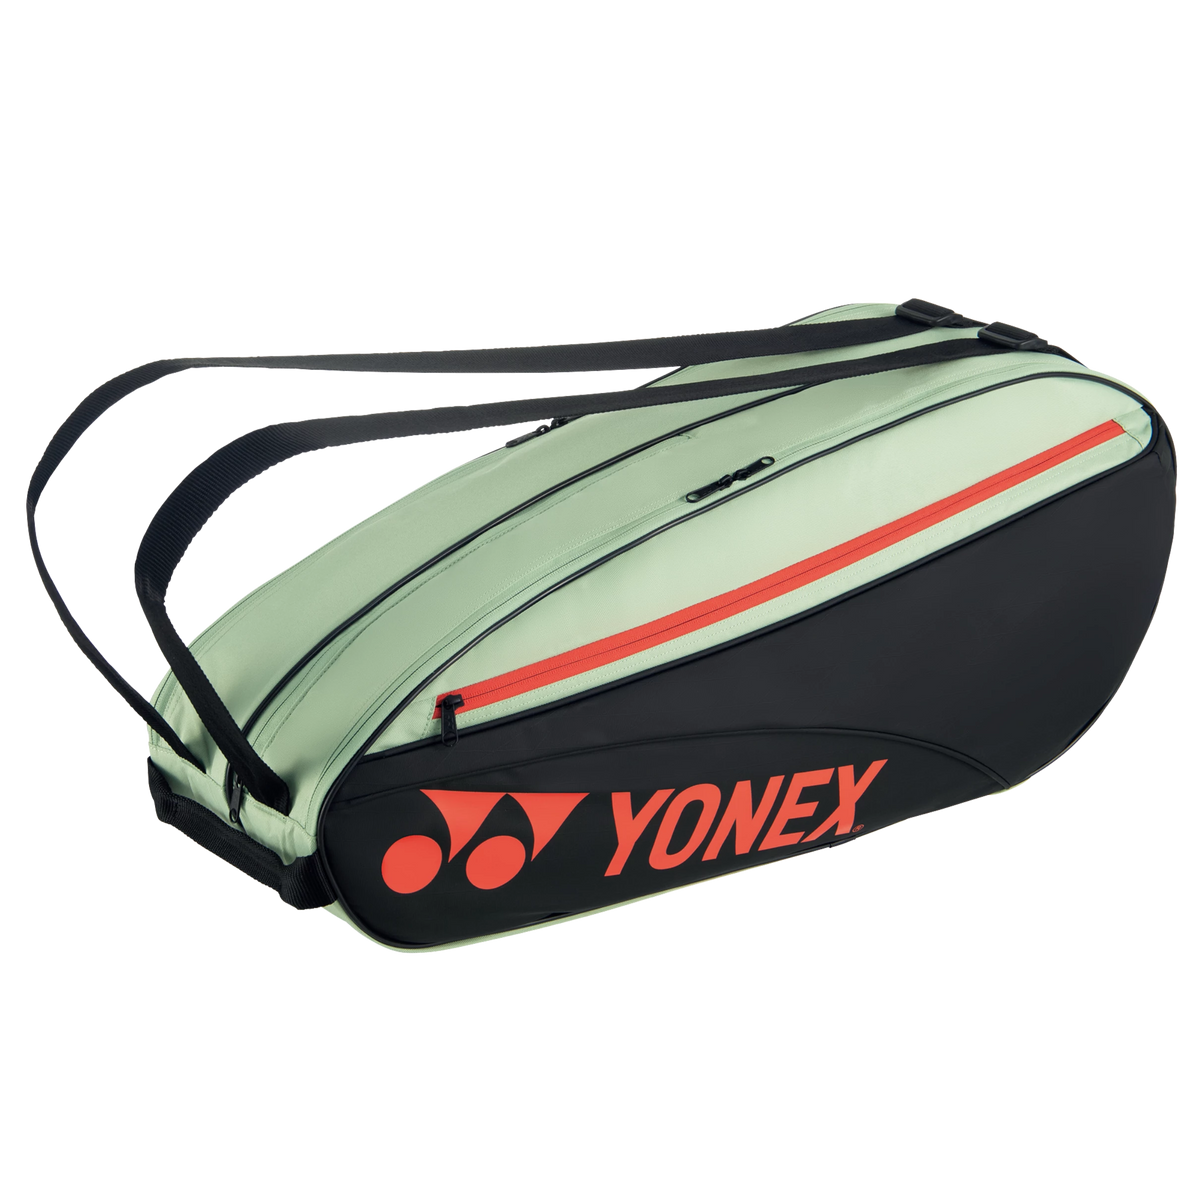 Yonex Racketbag 42326 grün